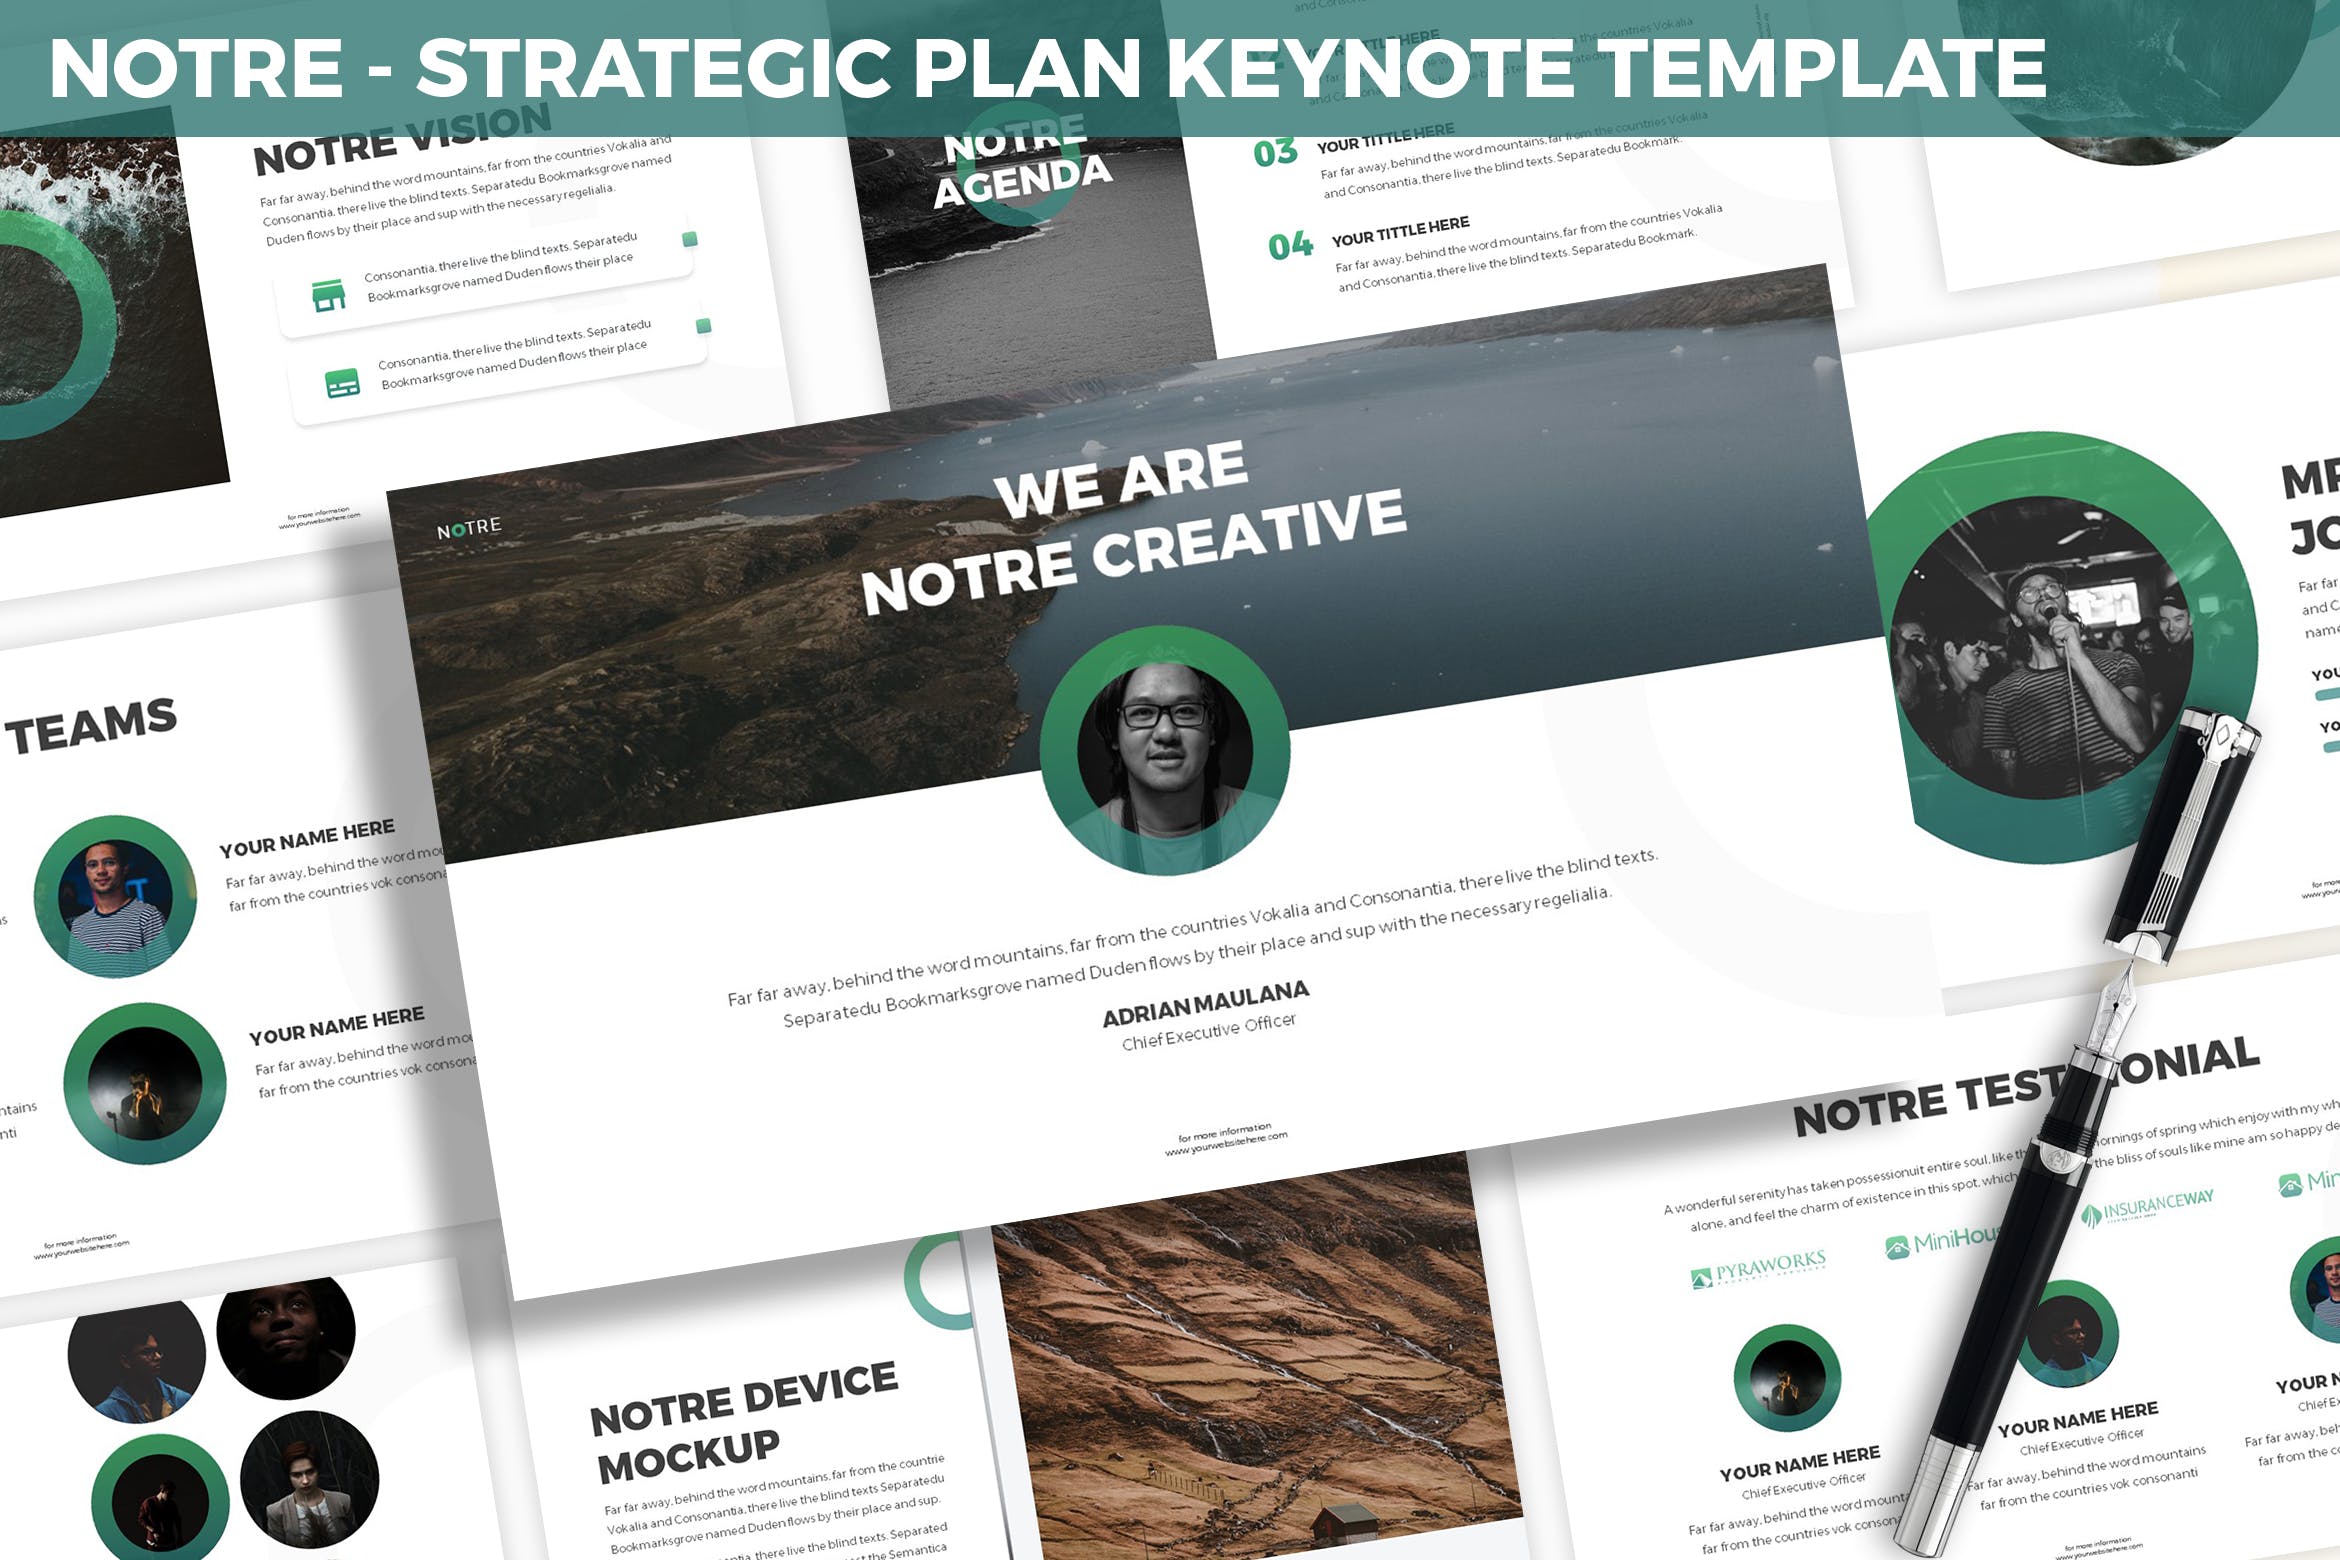 市场规划/项目计划主题非凡图库精选Keynote模板模板 Notre – Strategic Plan Keynote Template插图